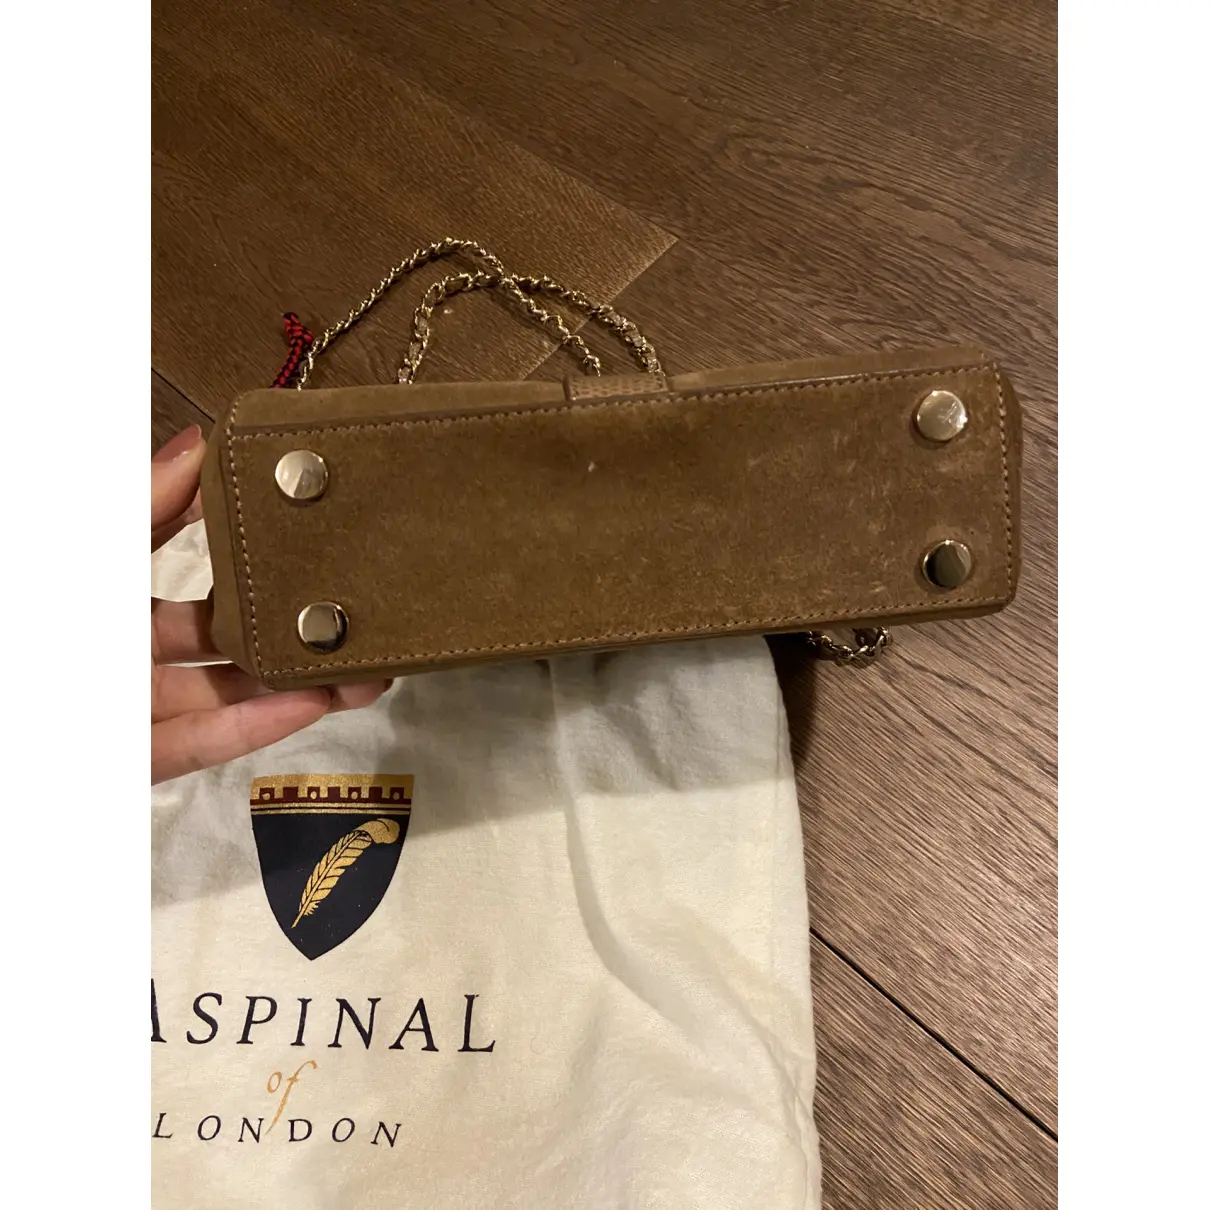 Lottie handbag Aspinal Of London